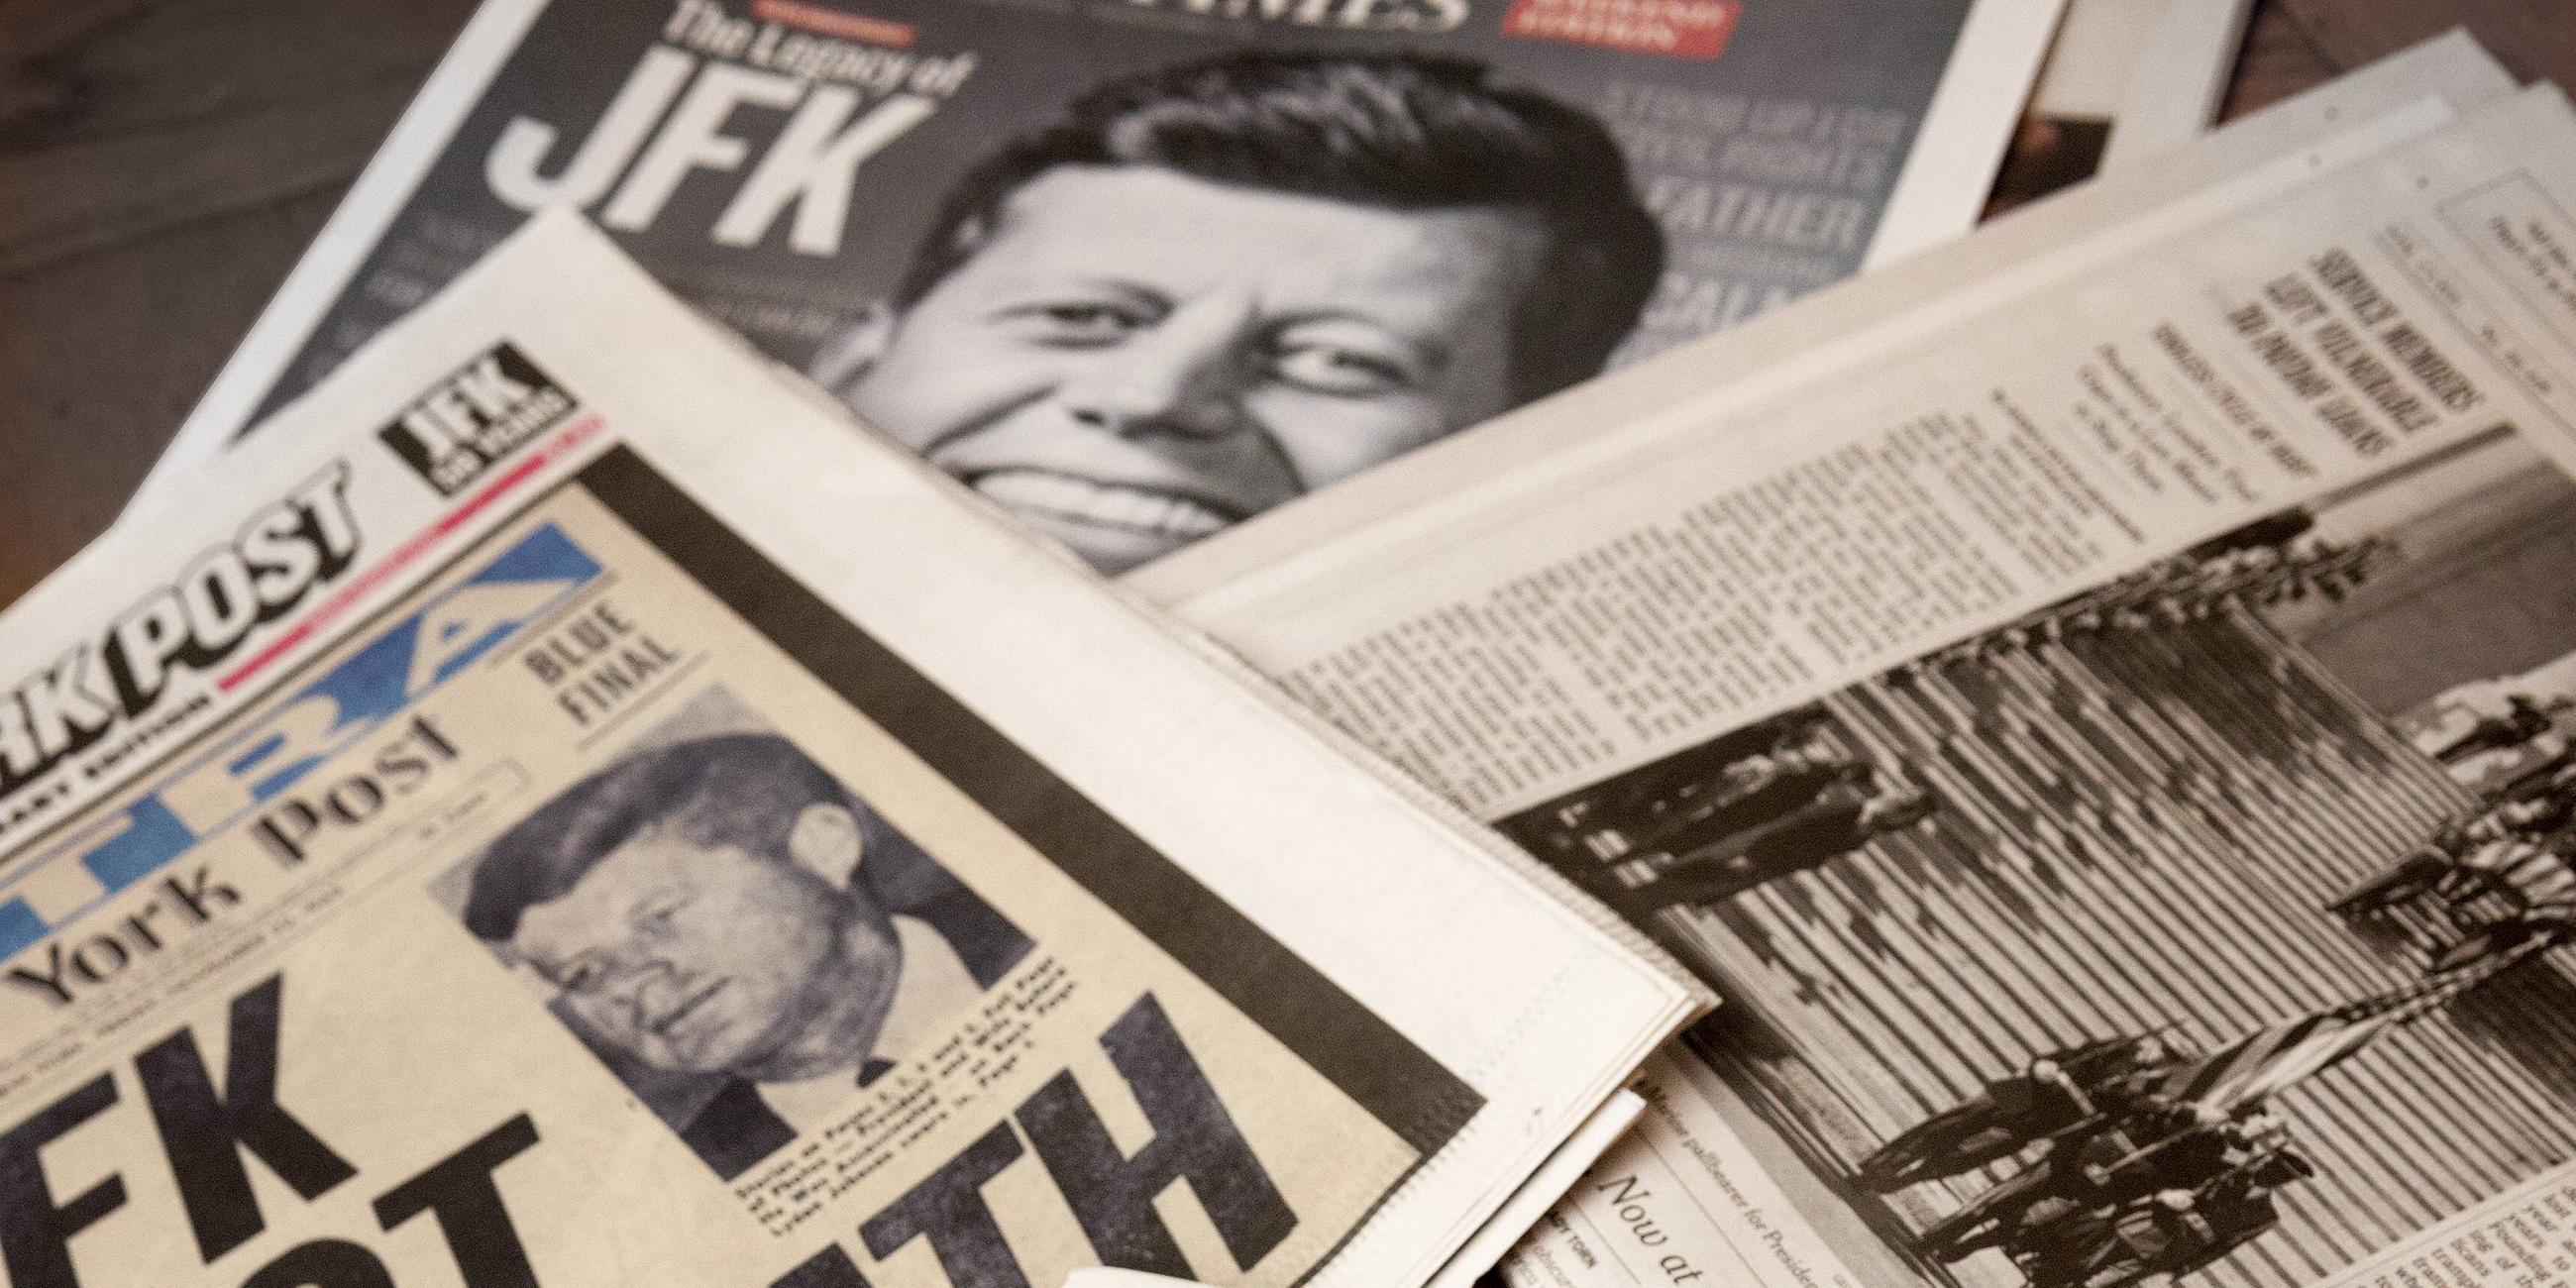 Schlagzeilen in US-Zeitungen nach dem Attentat an John F. Kennedy